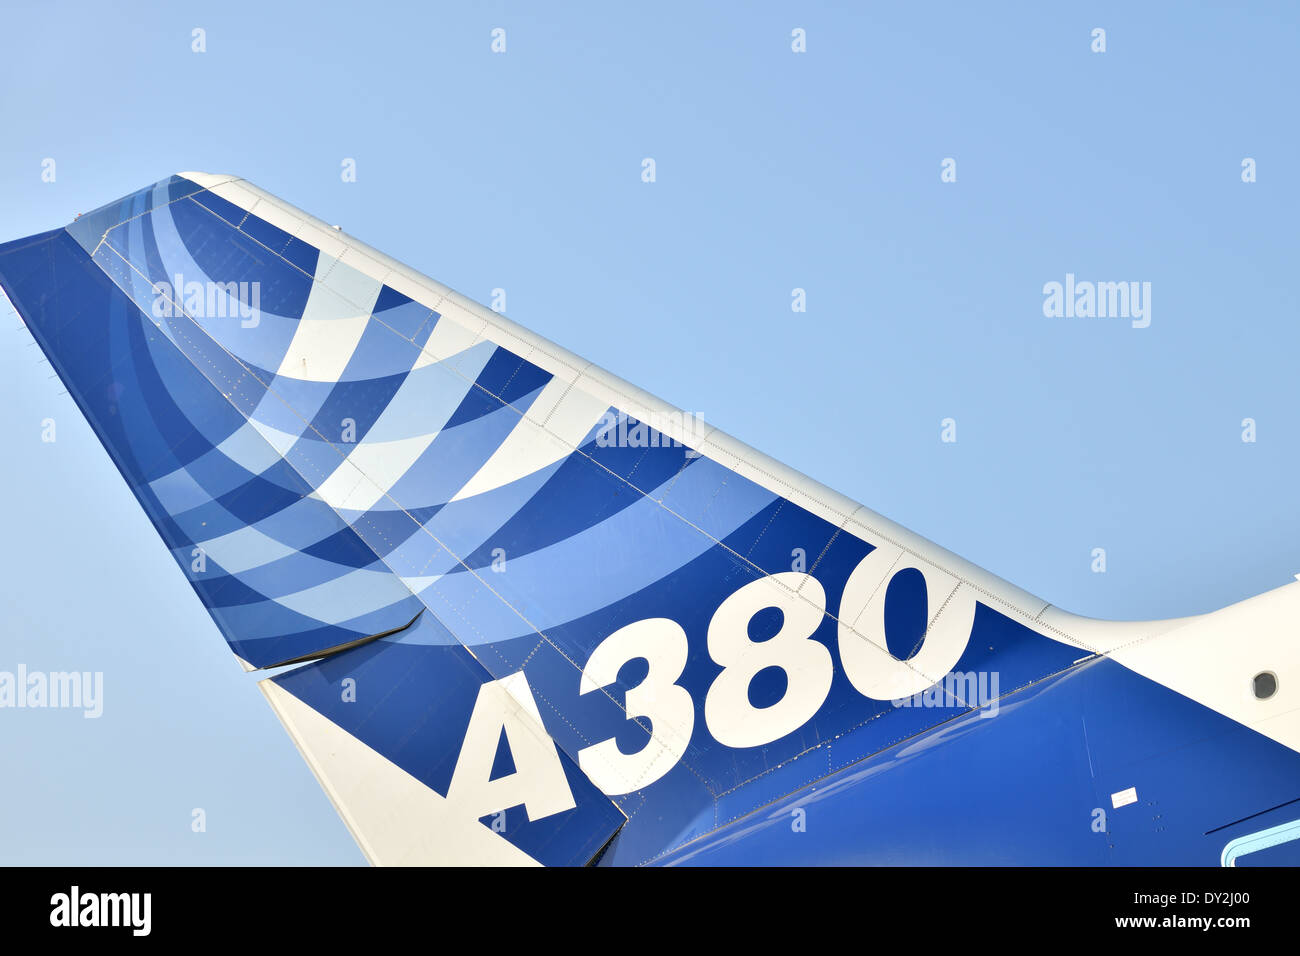 Detalle de la cola, el Airbus A380 en FIDAE 2014 Foto de stock